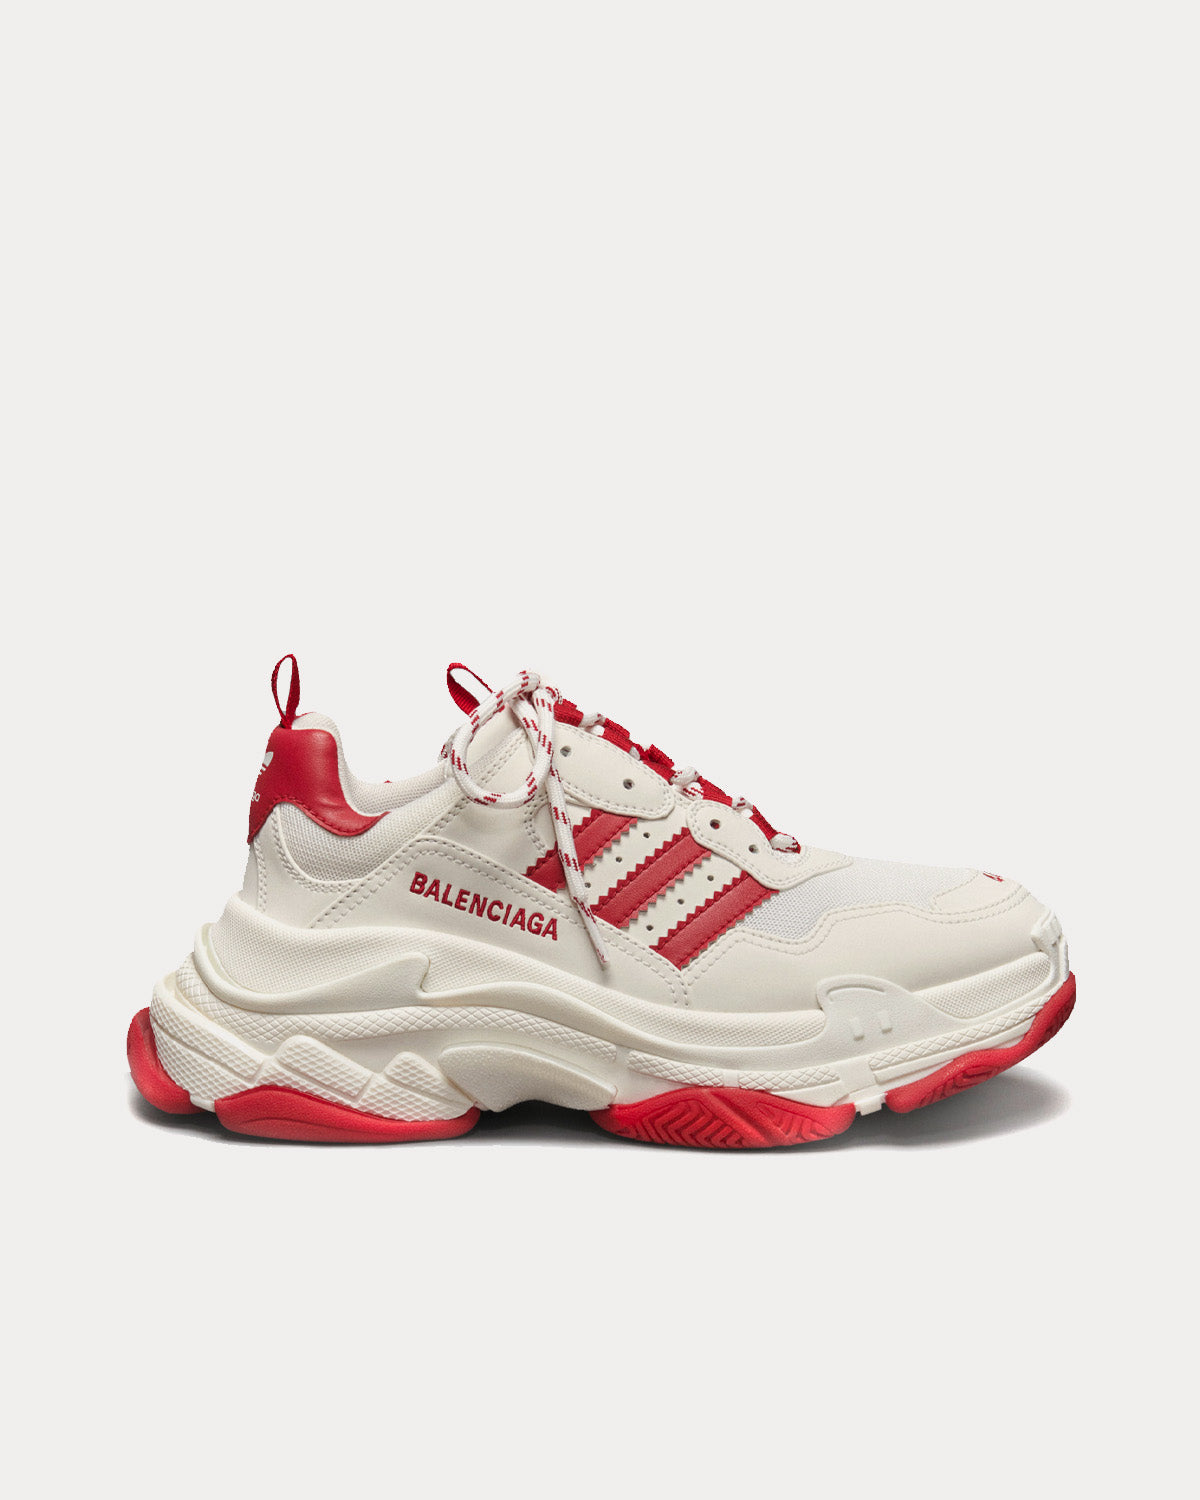 Balenciaga x Adidas - Triple S White / White / Red Low Top Sneakers